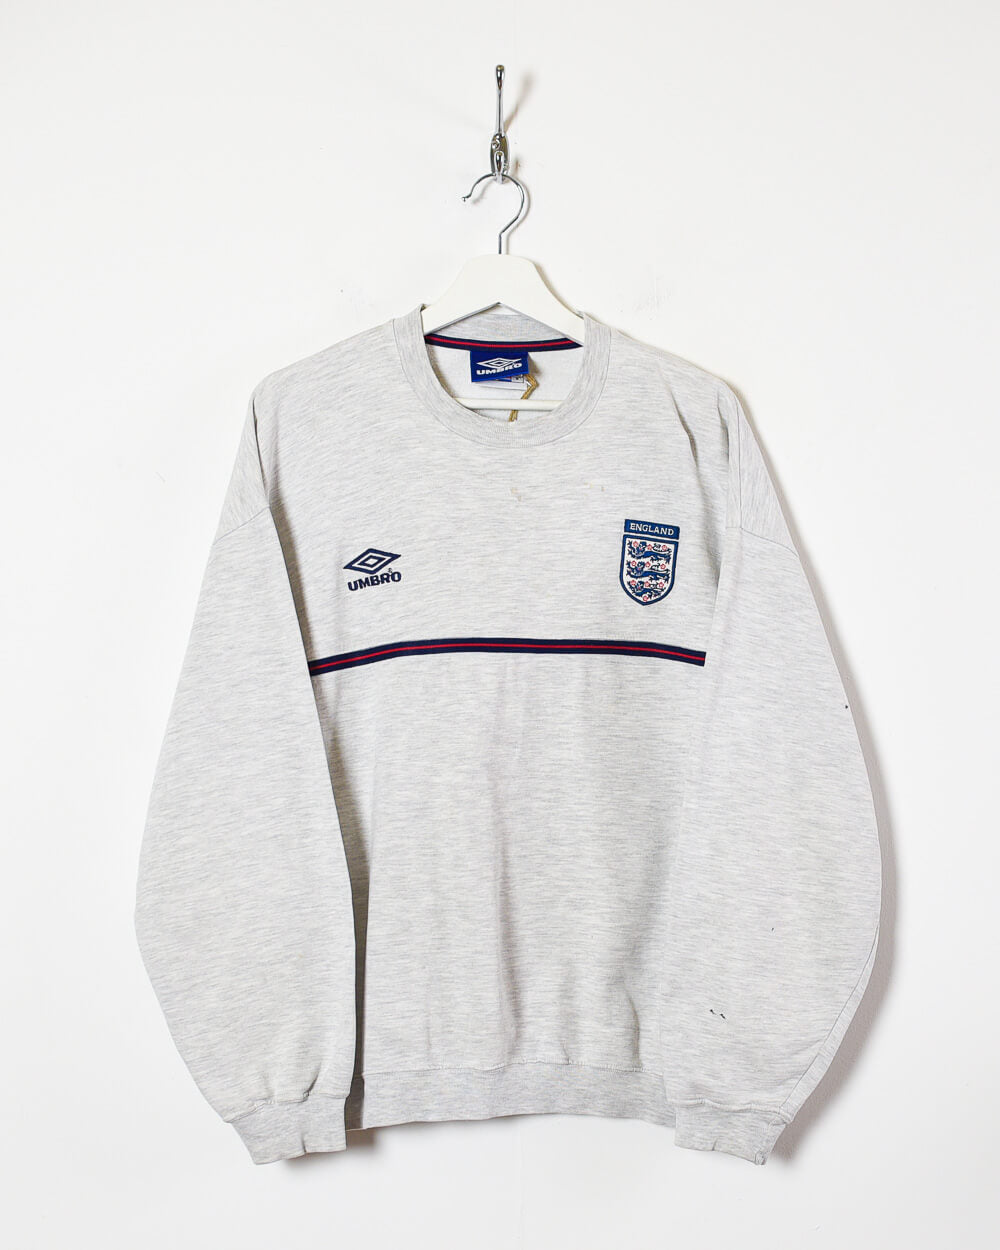 Stone Umbro England 90s Sweatshirt - Small